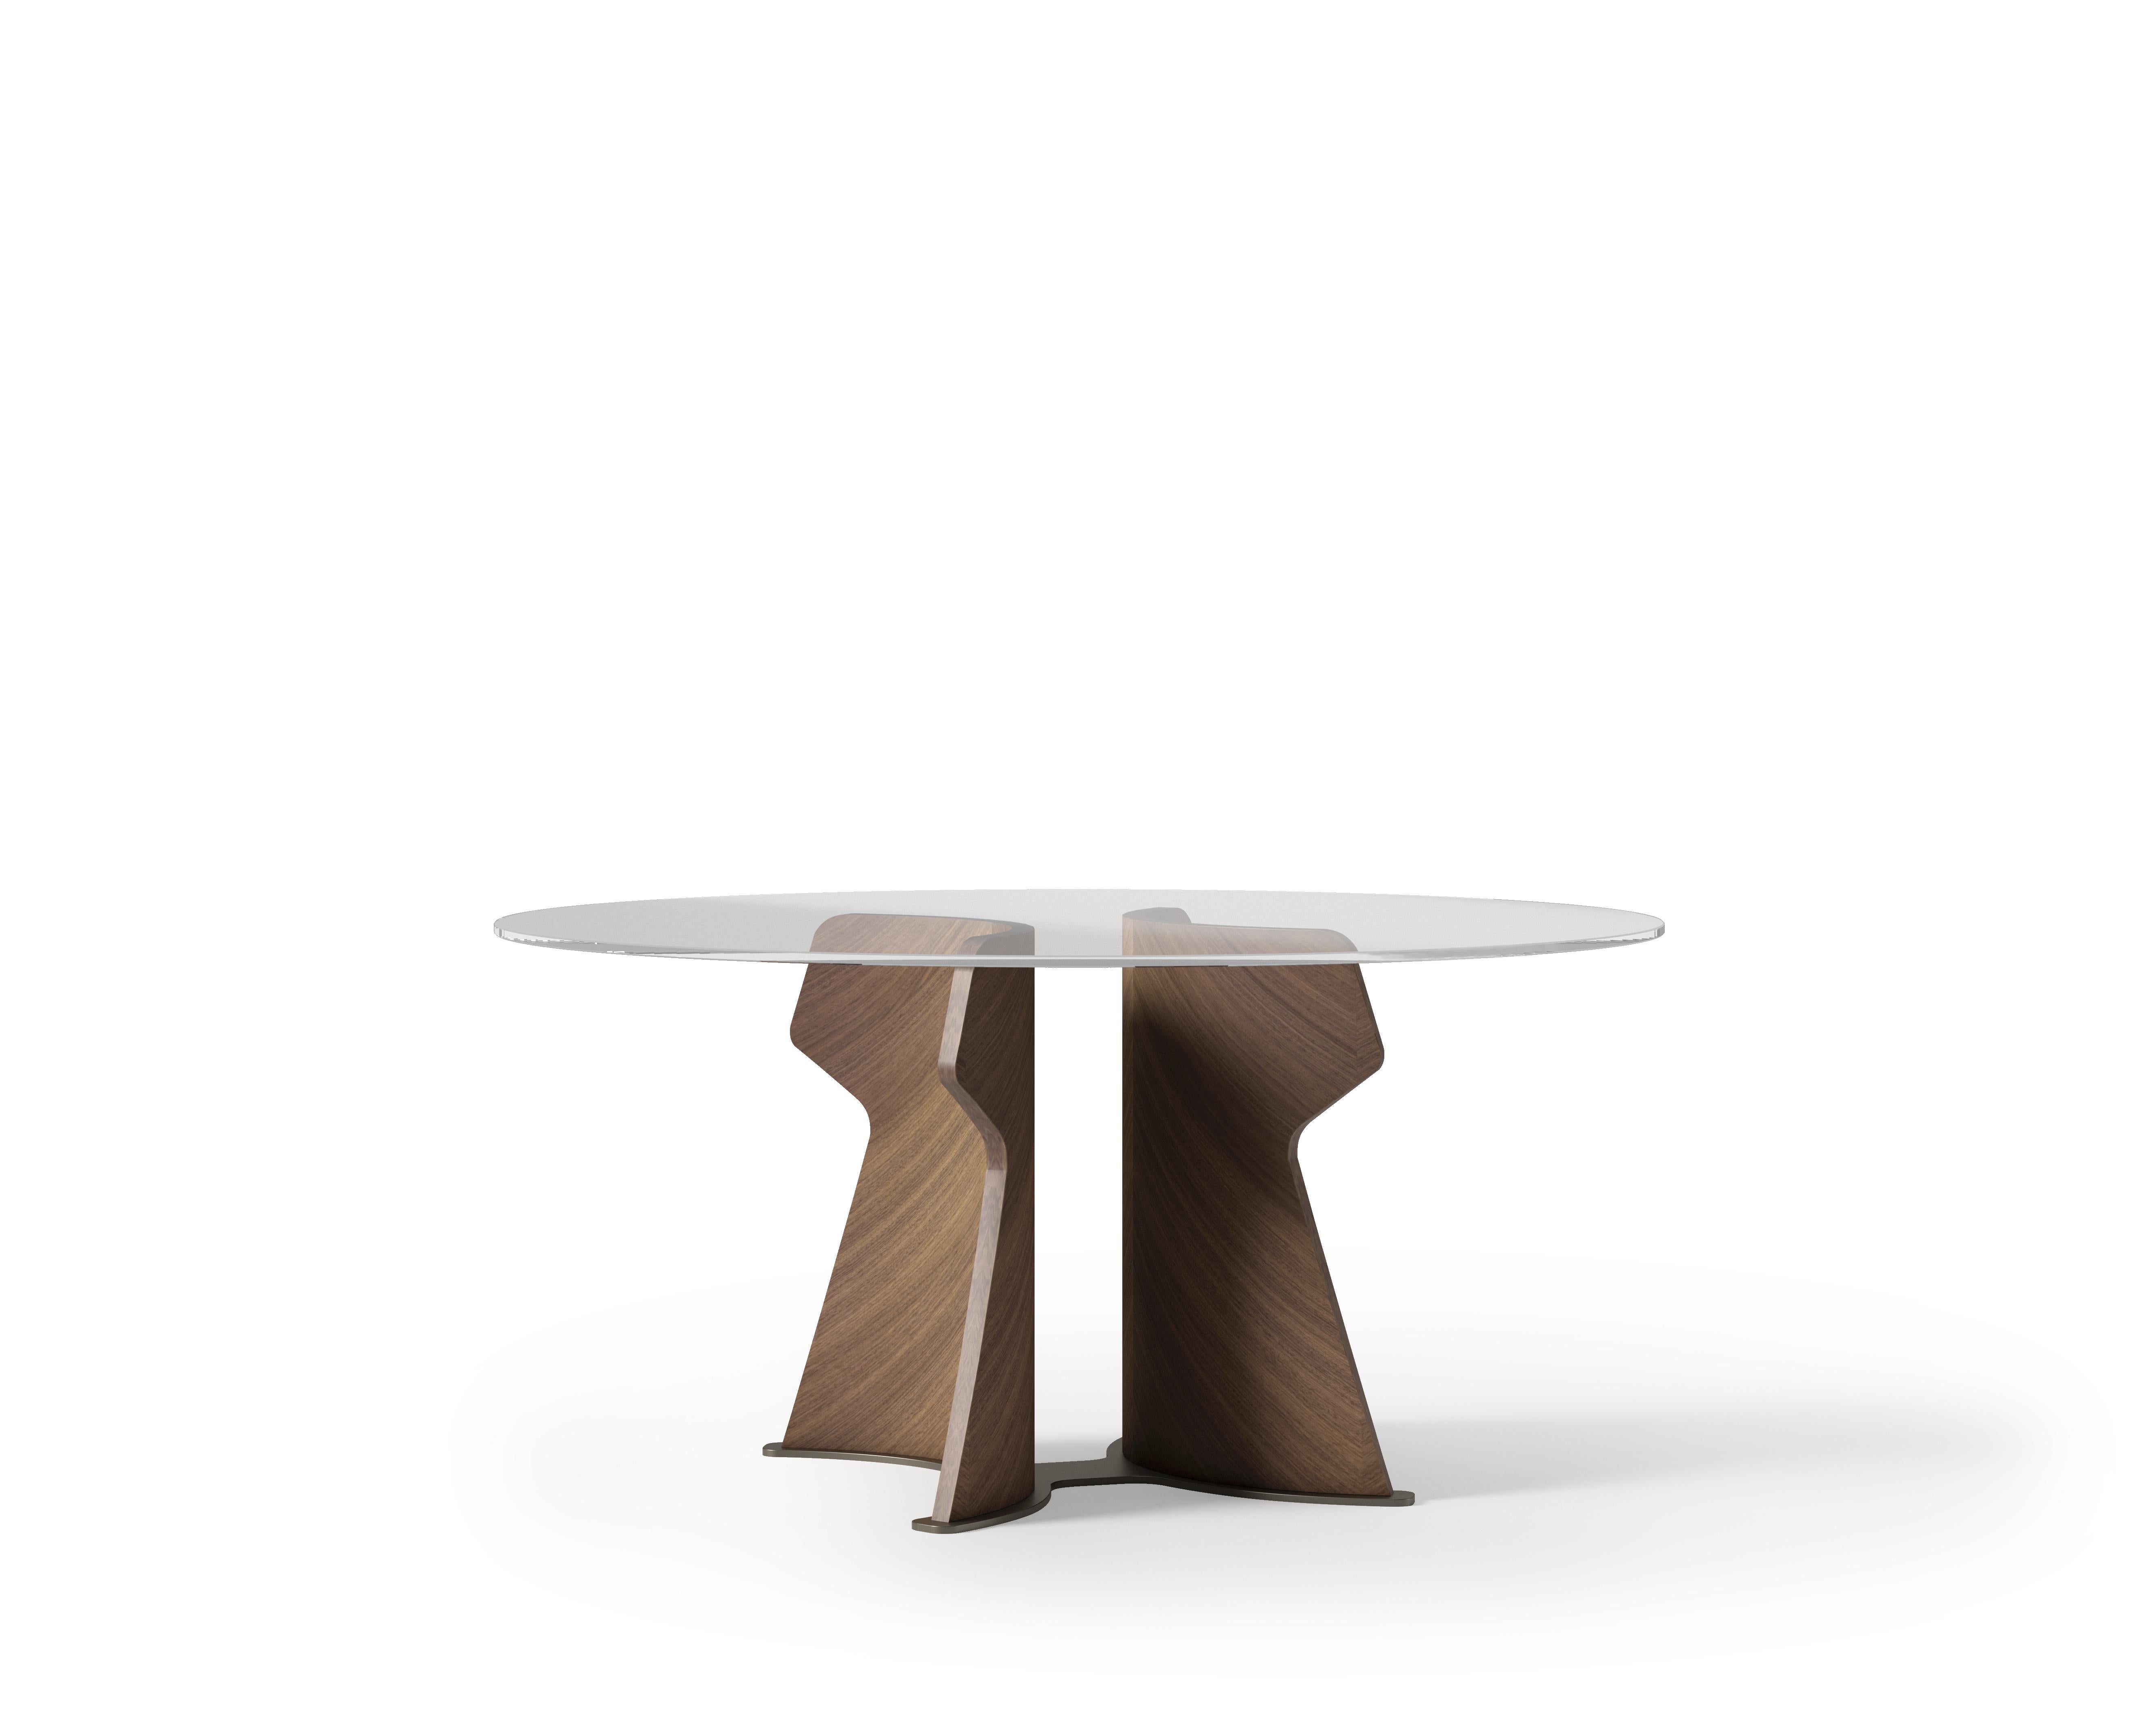 Der Tisch ist von den entscheidenden Merkmalen der Architektur der Osterinsel inspiriert. Er zeichnet sich durch einen skulpturalen Sockel aus, der mit edlen Hölzern verkleidet ist und in den Farben helles Tay, dunkles Tay und Canaletto Nussbaum